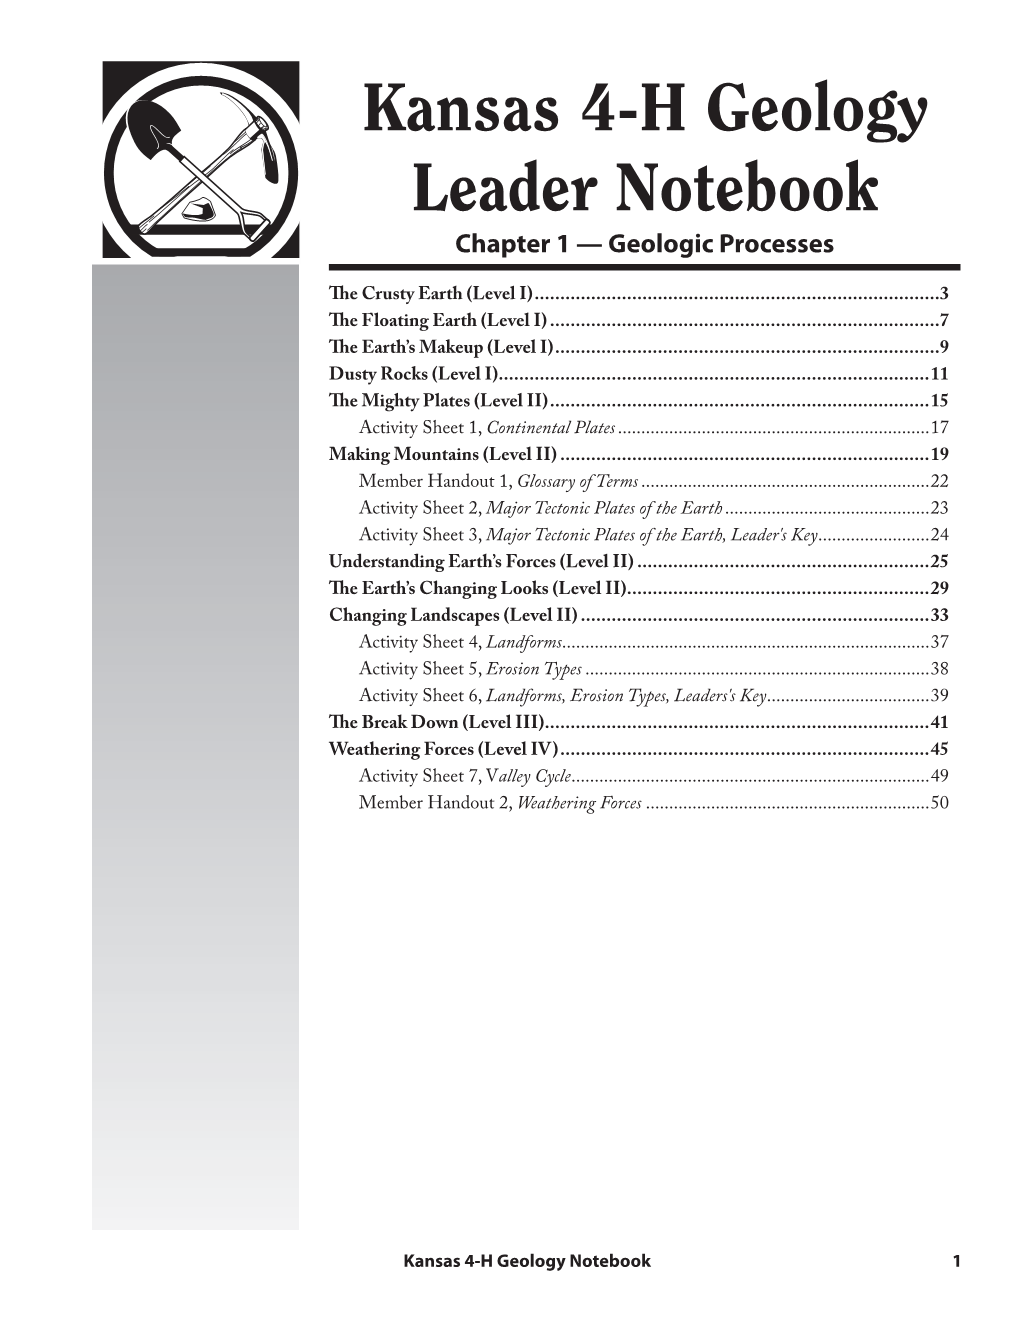 S149 Kansas 4-H Geology Leader Notebook Ch. 1